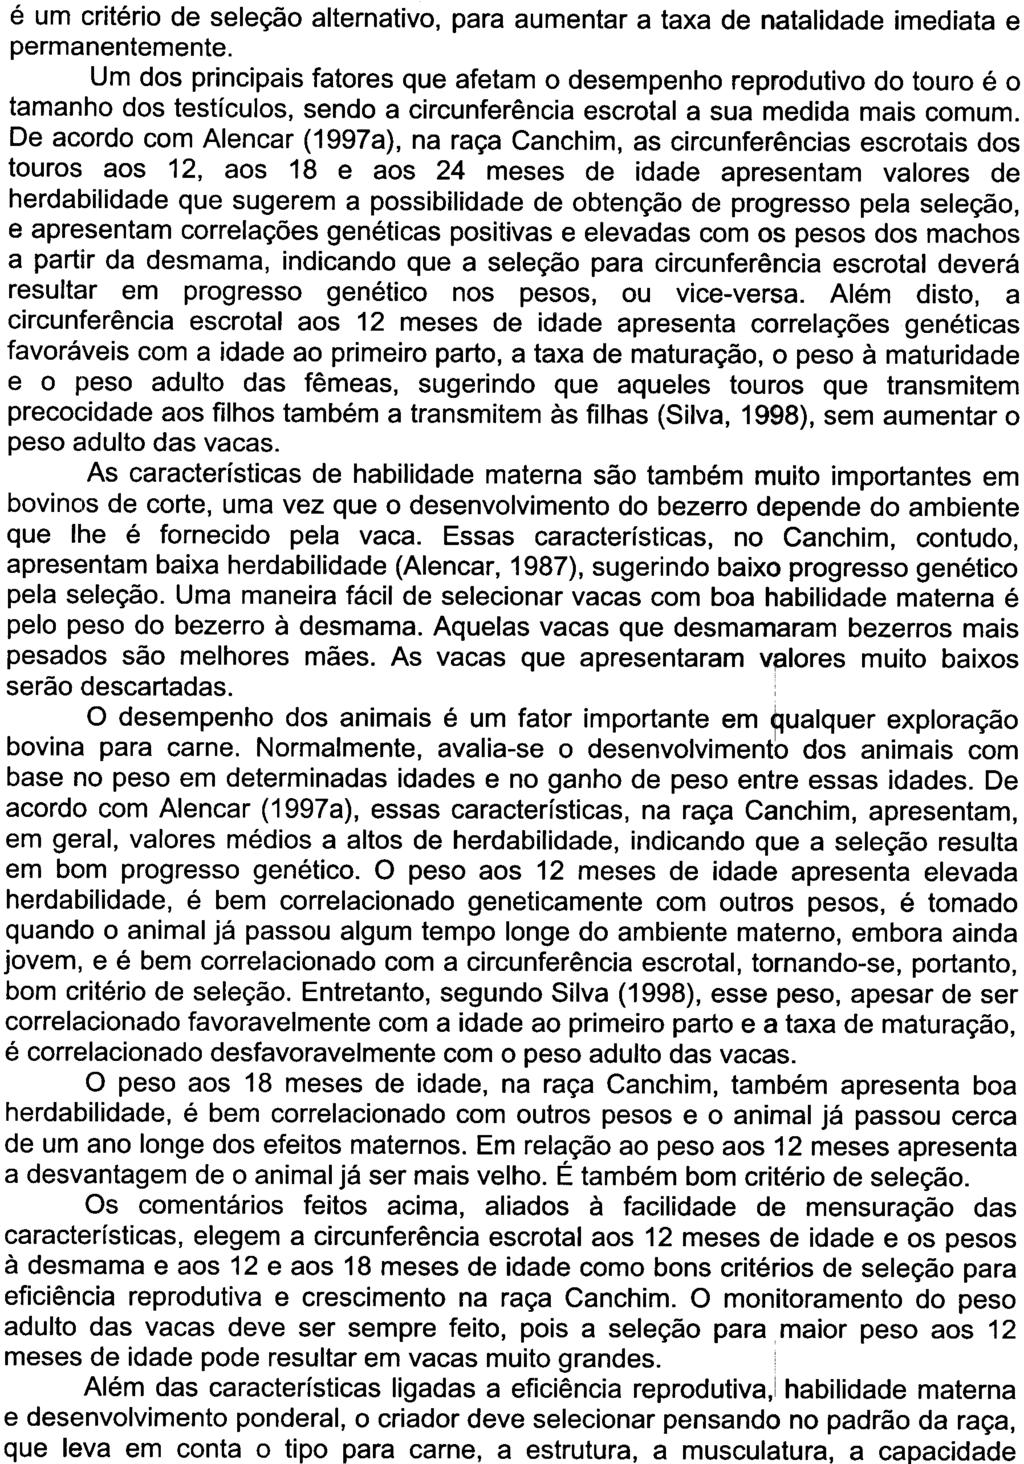 ALENCAR, Mauricio. A Raça Canchim. In SIMPÓSIO PEcuARIA 2000 -PERSPECTIVAS RARA O li! MILÊNIO, 1., Pirassununga, 2000. Anais. Pirassununga: FZEA-USP, 2000.1 CD-RQt.1.'"..~.